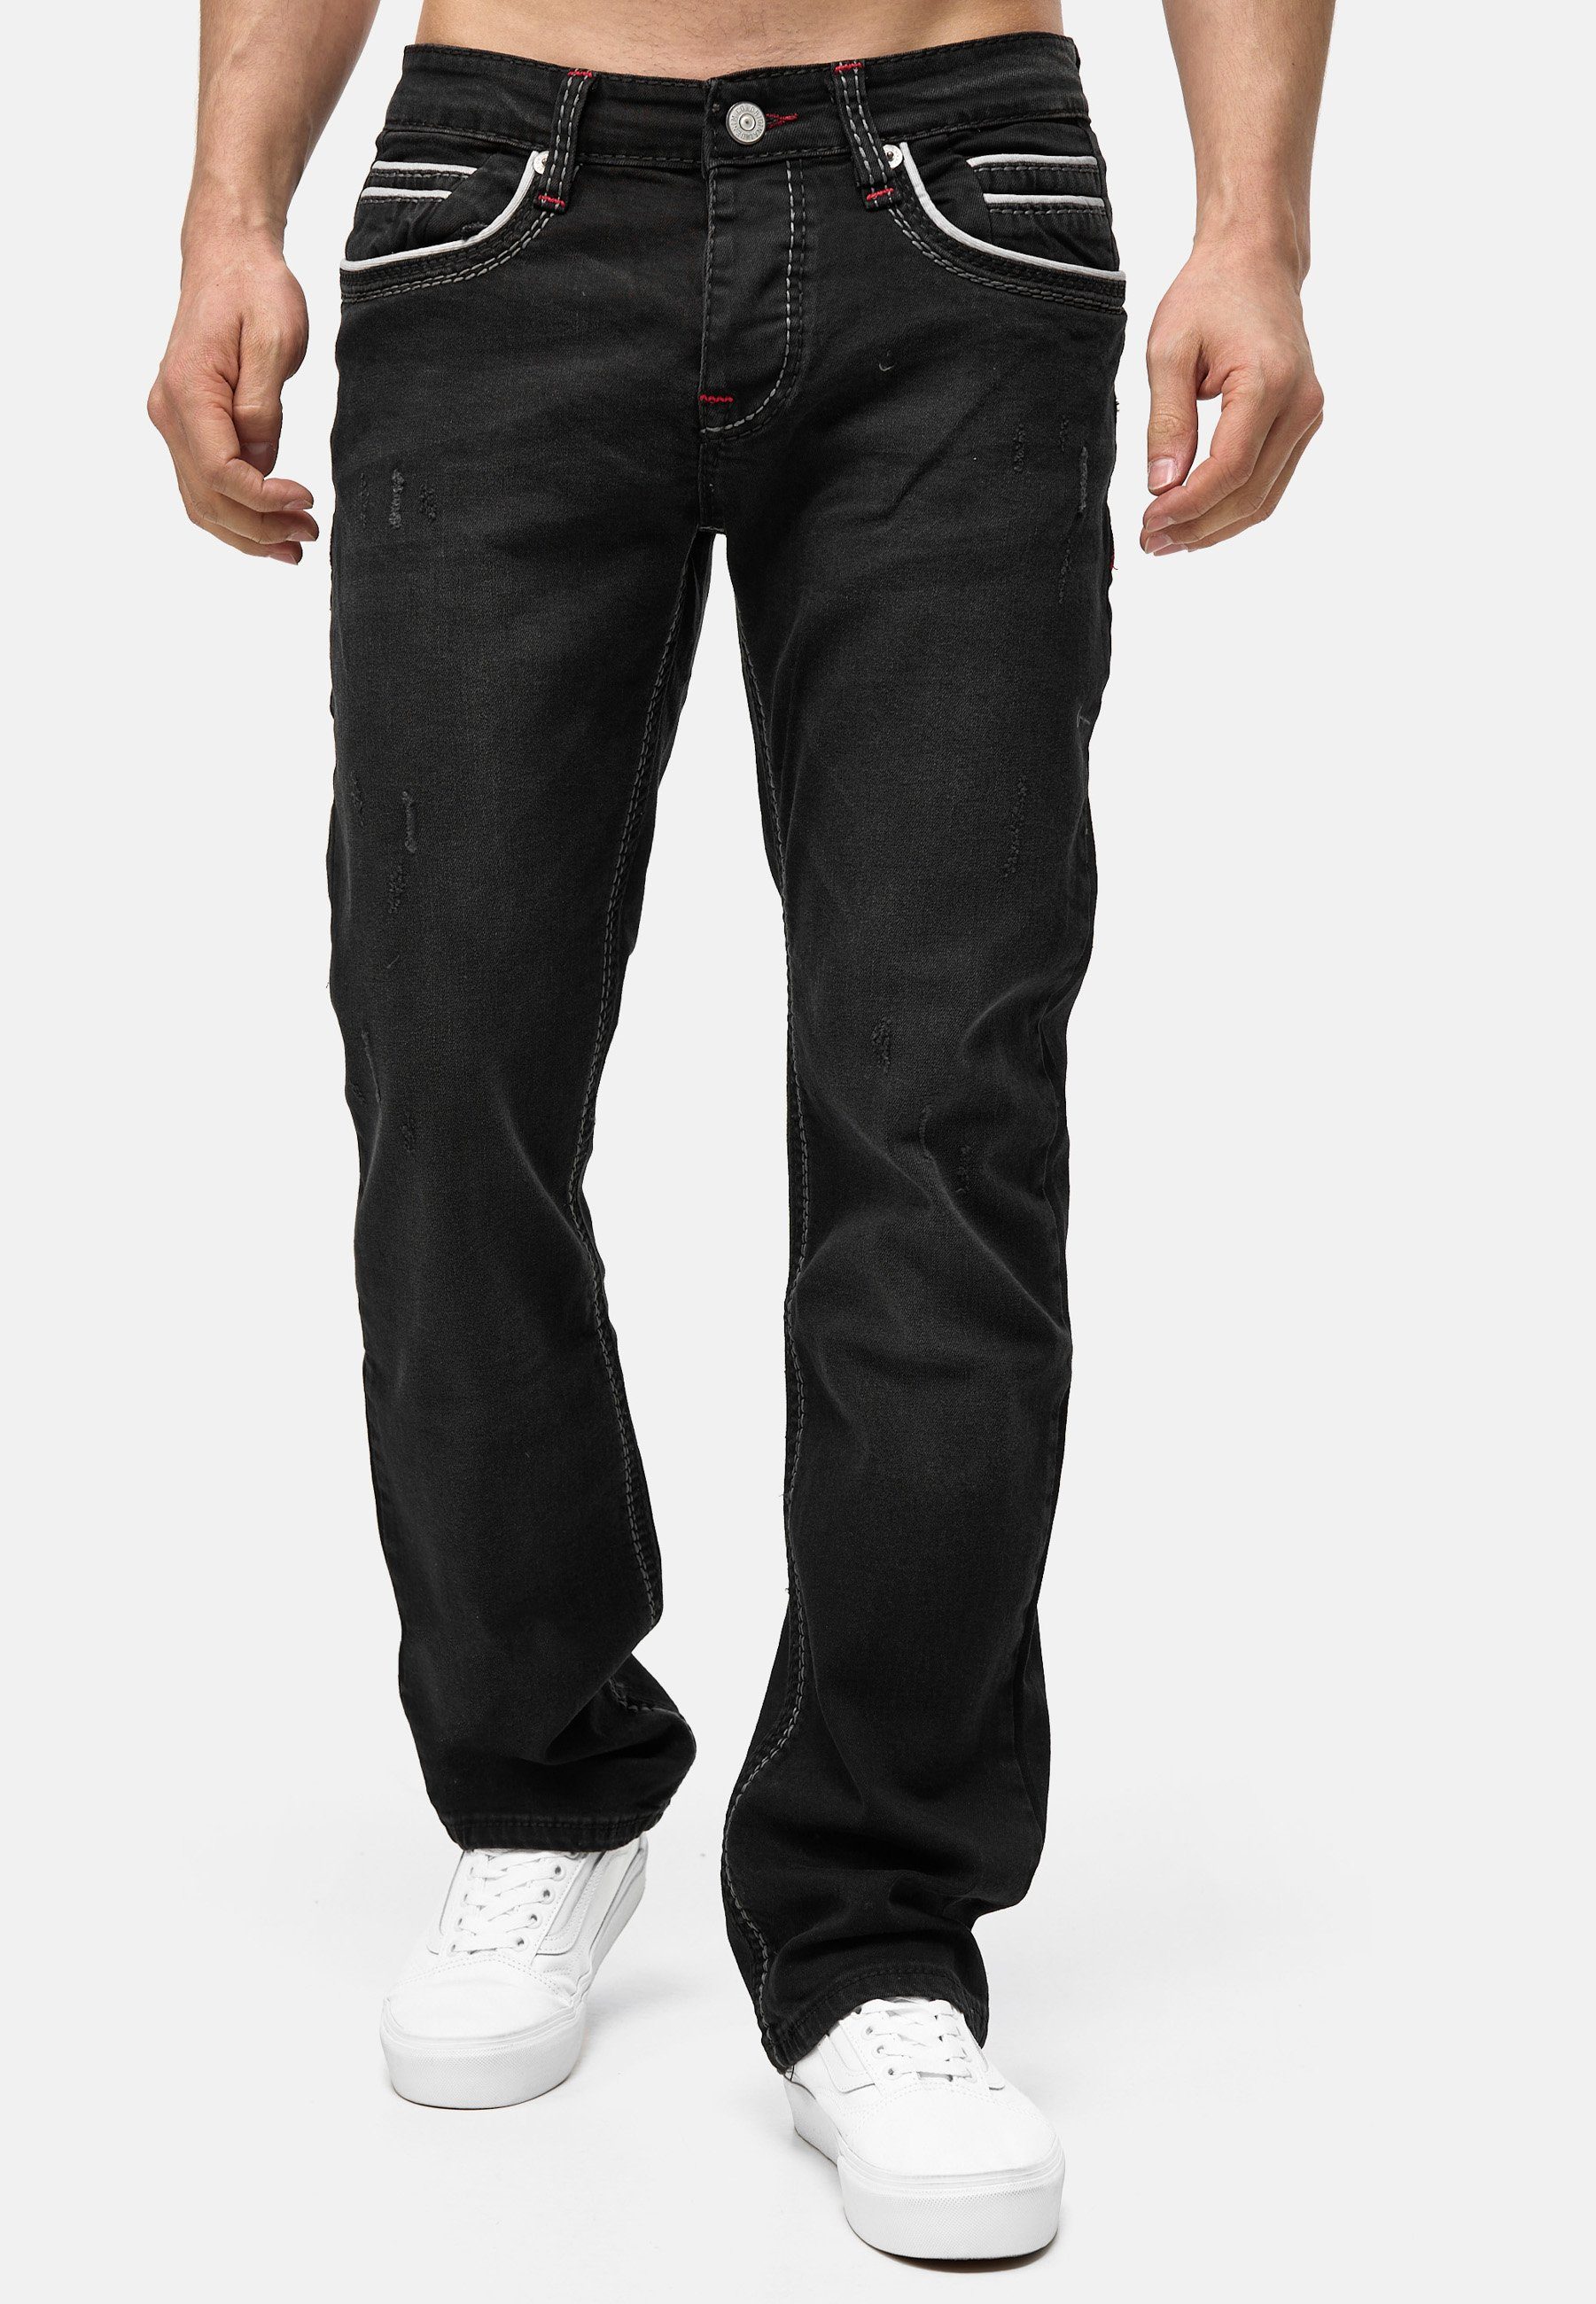 Modell Regular-fit-Jeans 3337 Schwarz Herren Jeans Code47 Code47